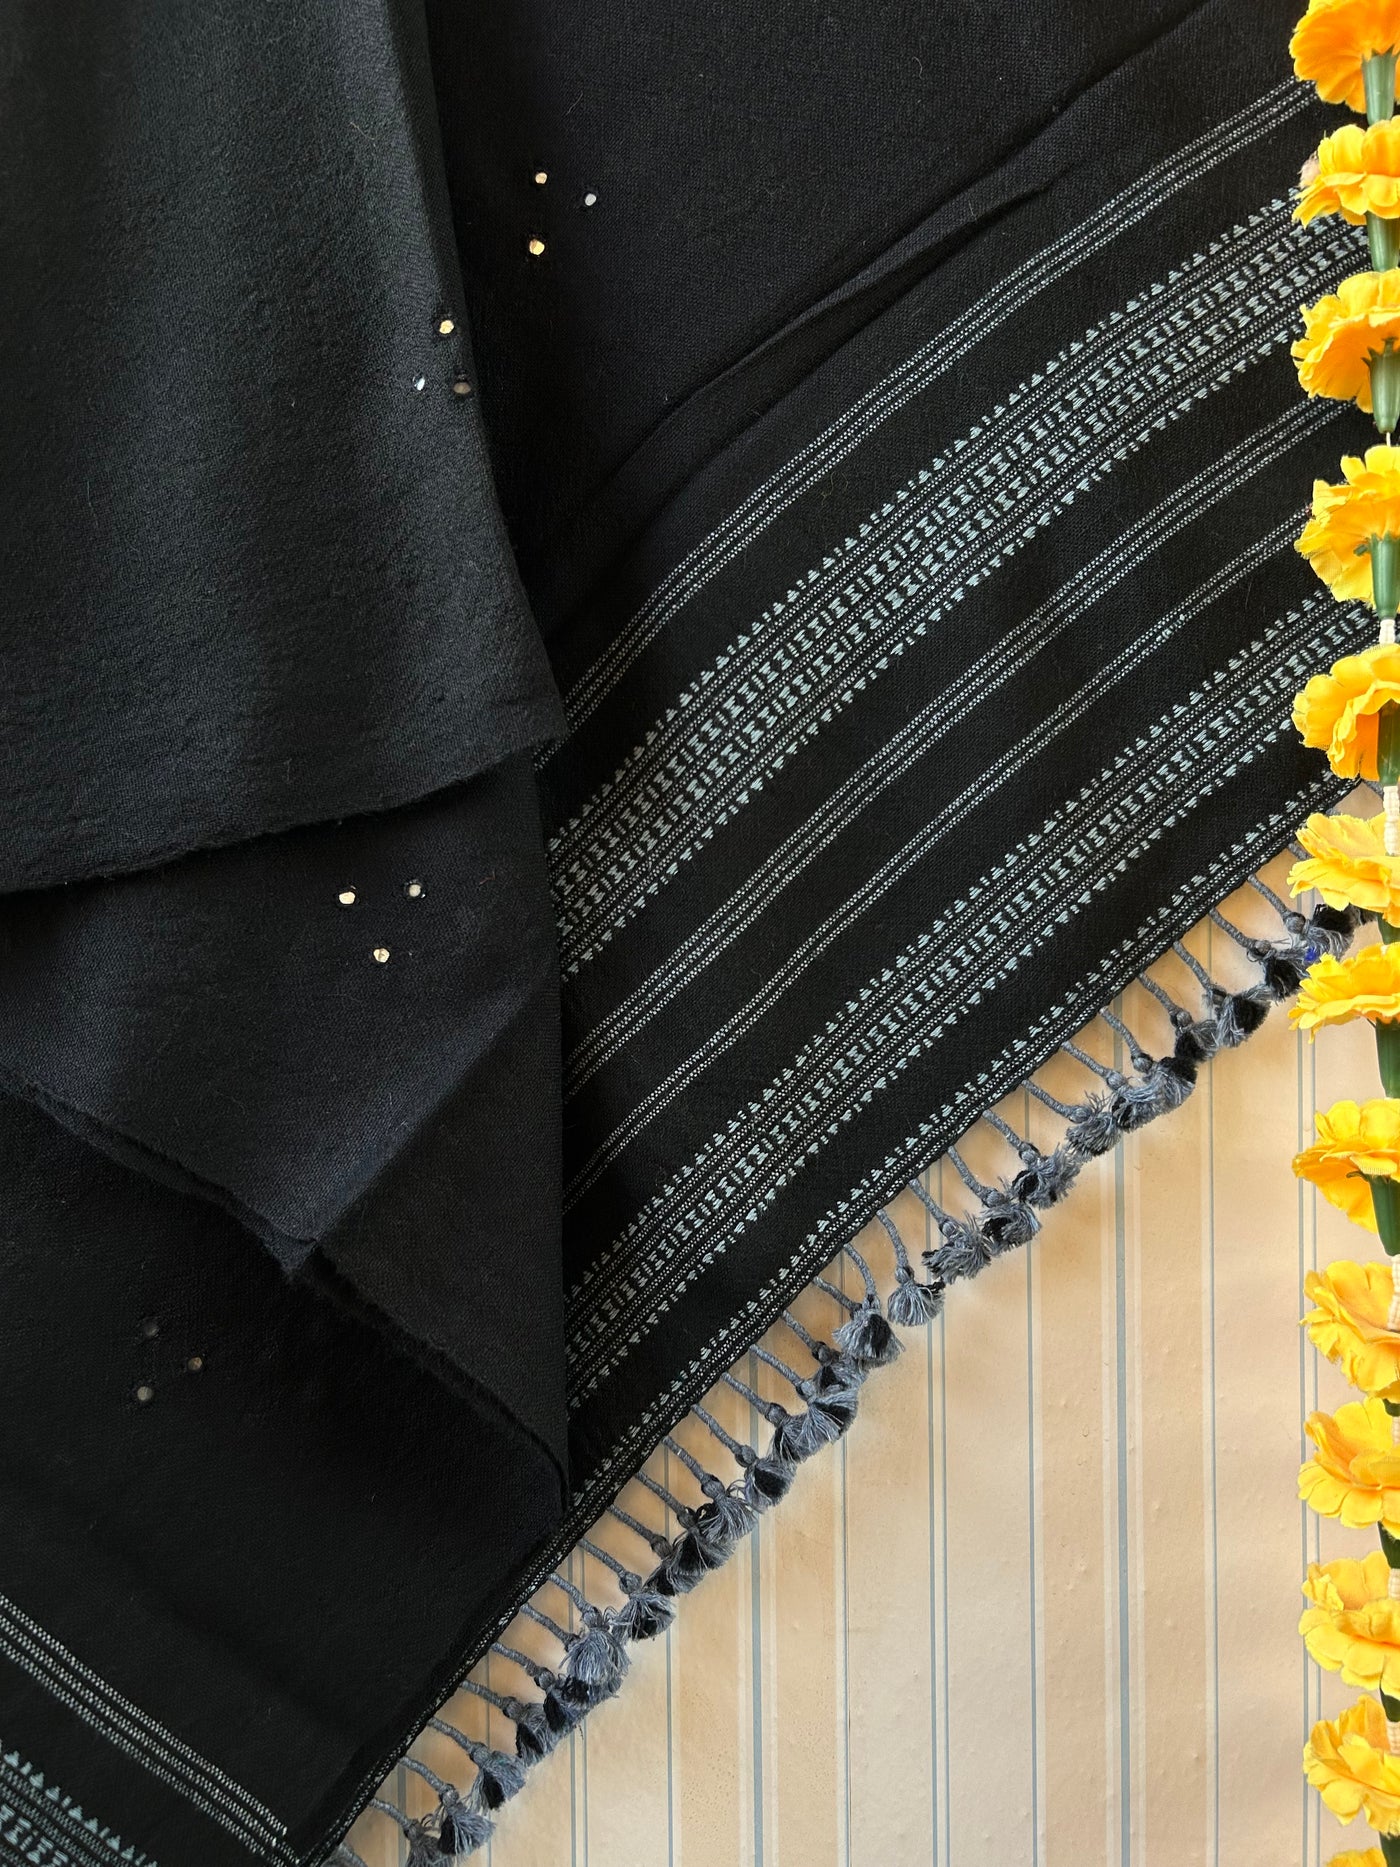 My Favourite Black: Handloom Marino Wool bhujodi shawl with mirror work